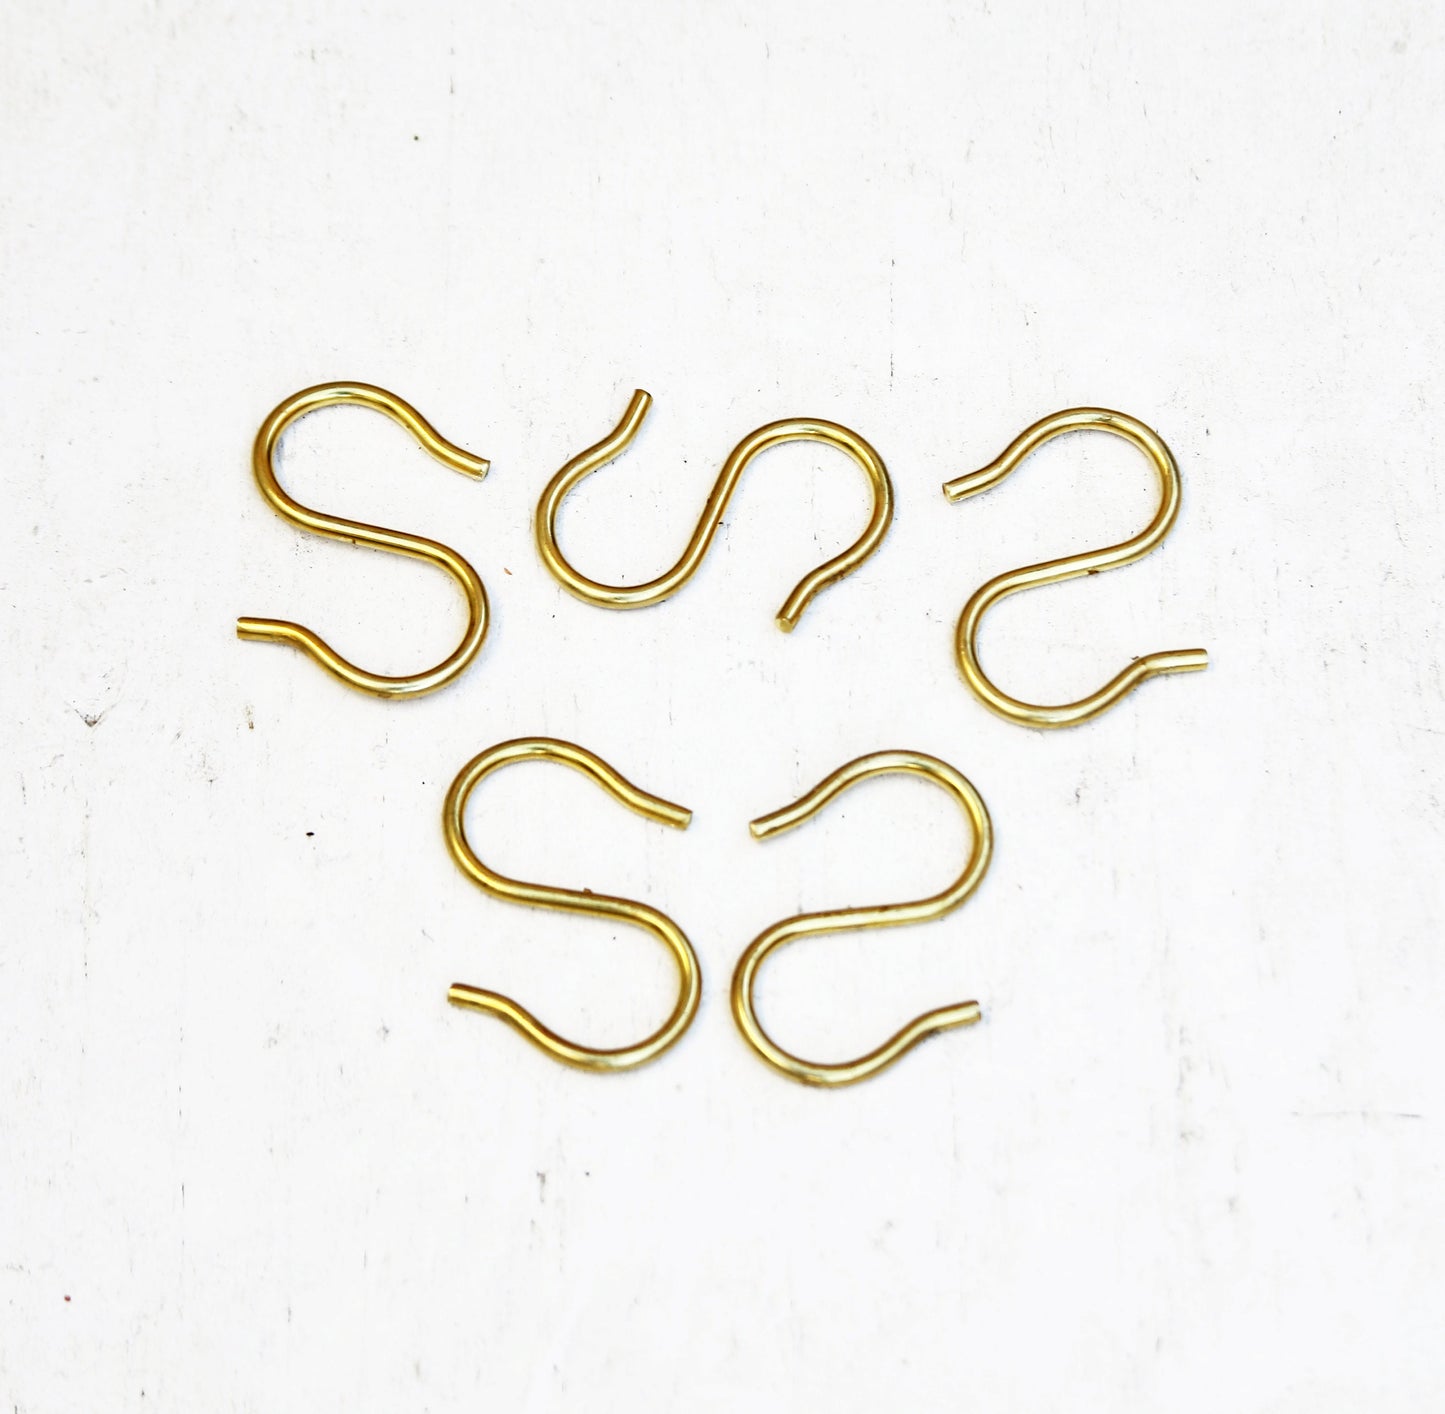 Brass "S" shape hook